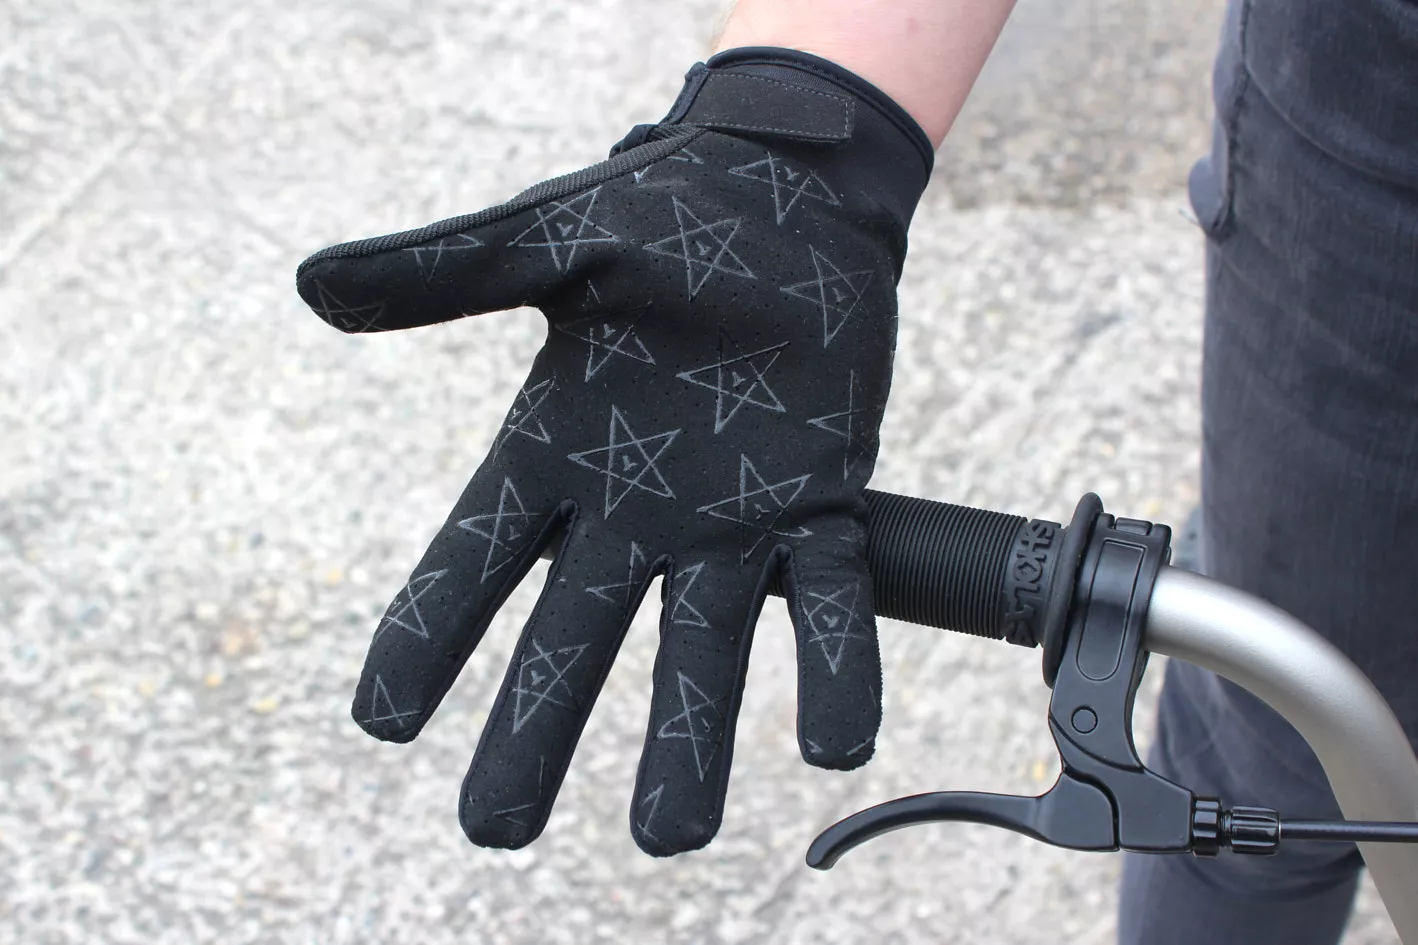 BMX Gloves KHE 4130 M